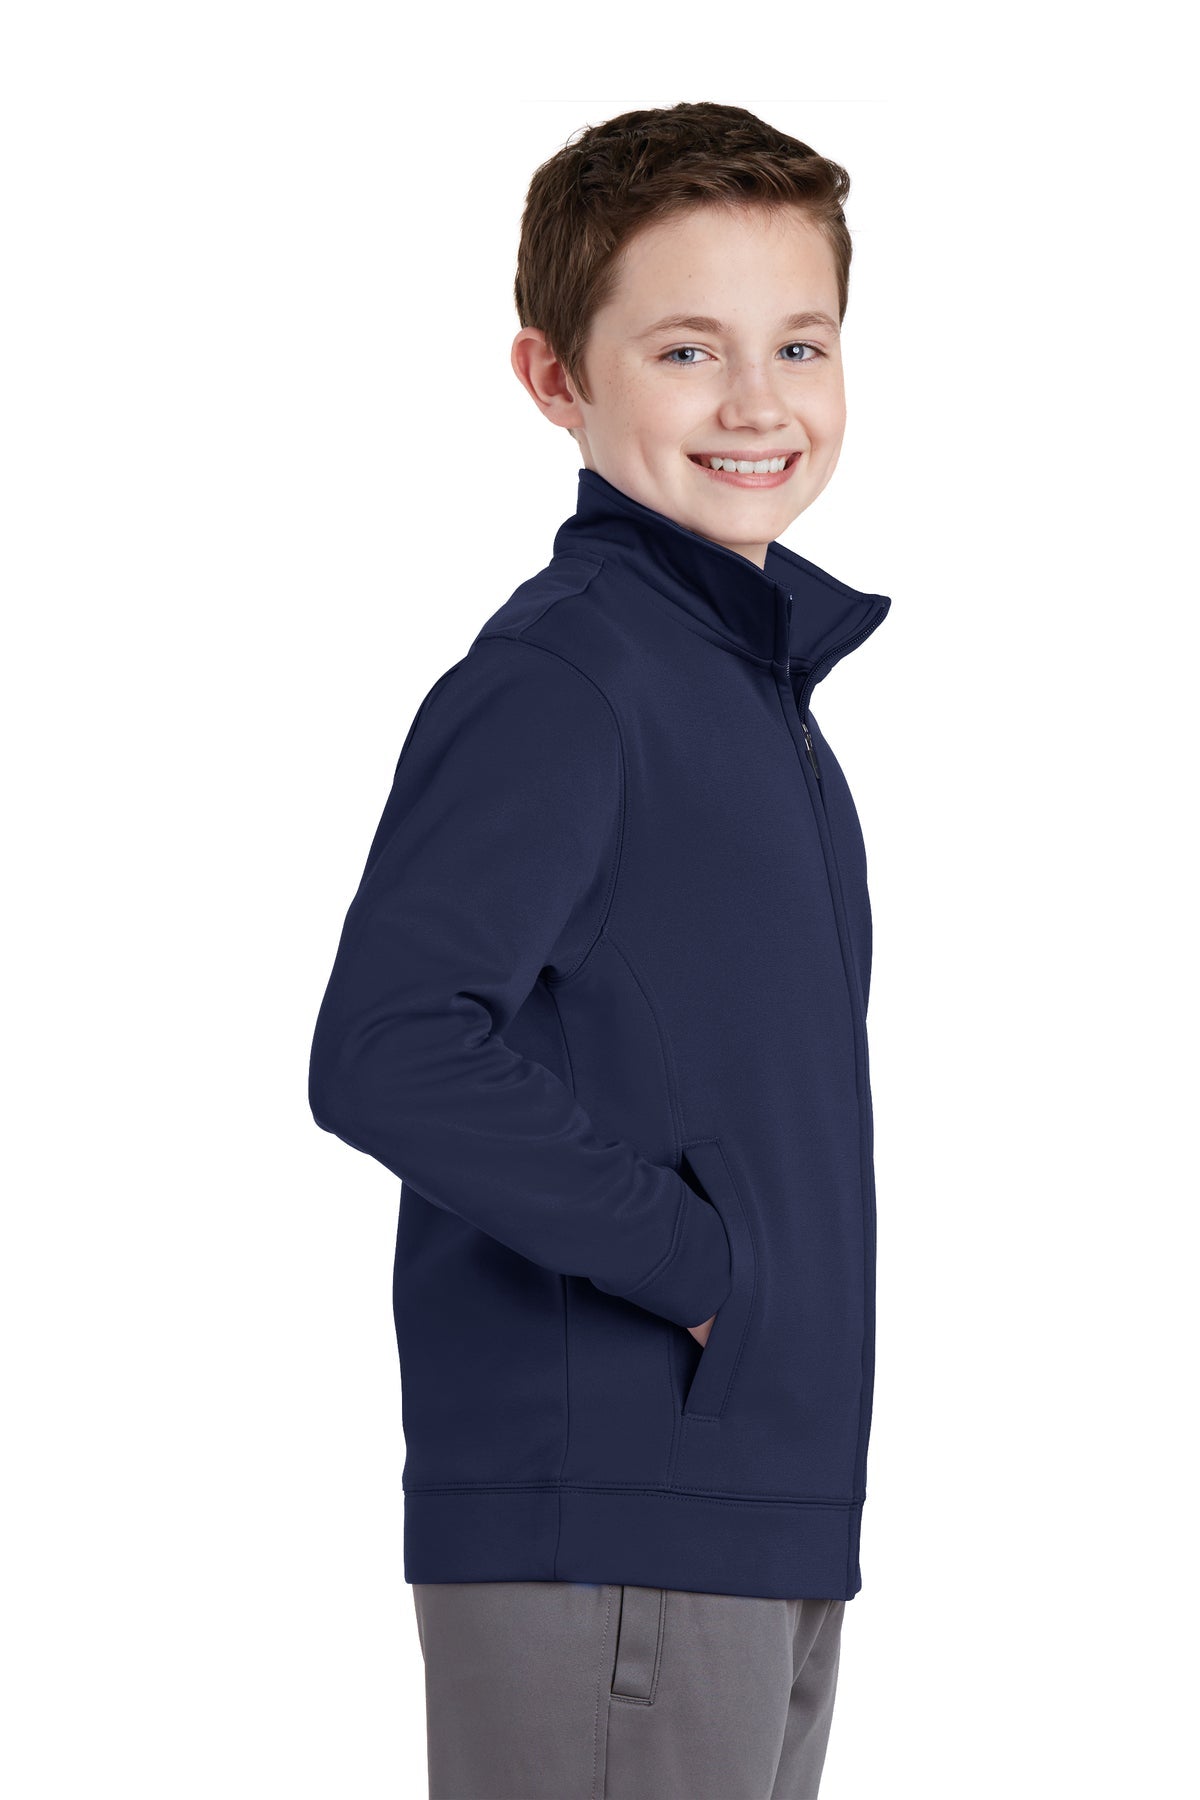 YST241 Sport-Tek® Youth Sport-Wick® Fleece Full-Zip Jacket